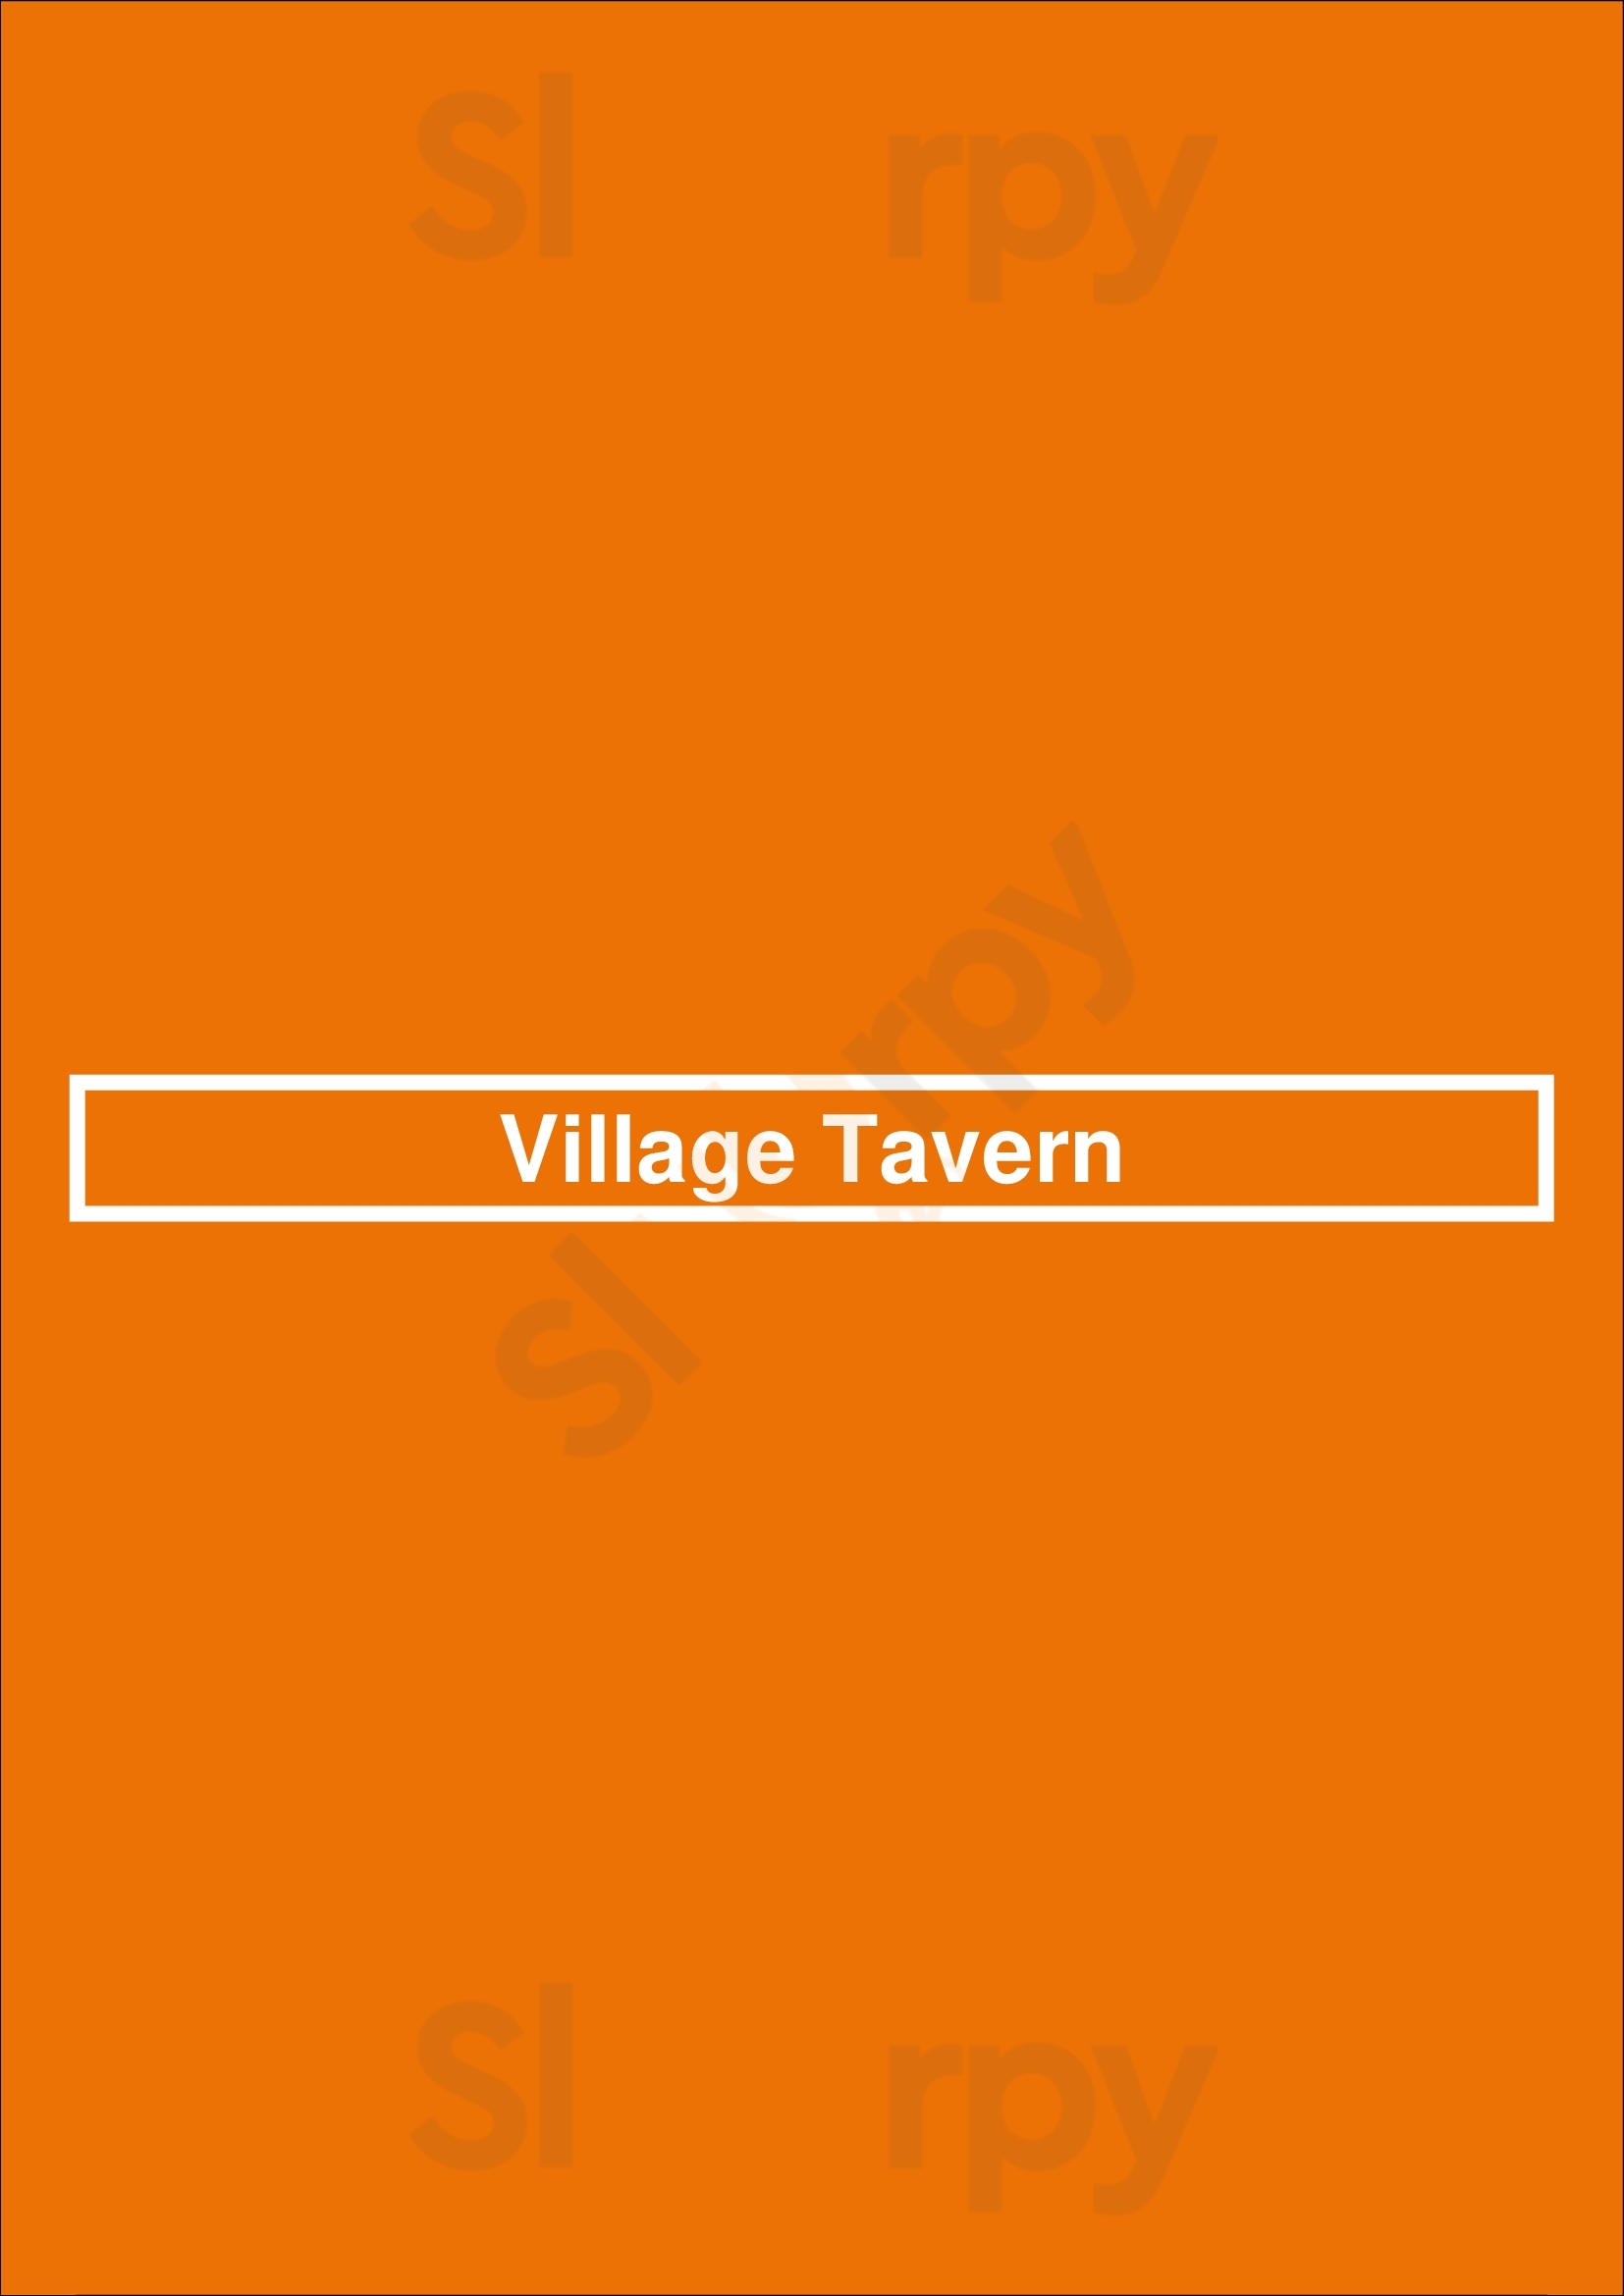 Village Tavern Greensboro Menu - 1